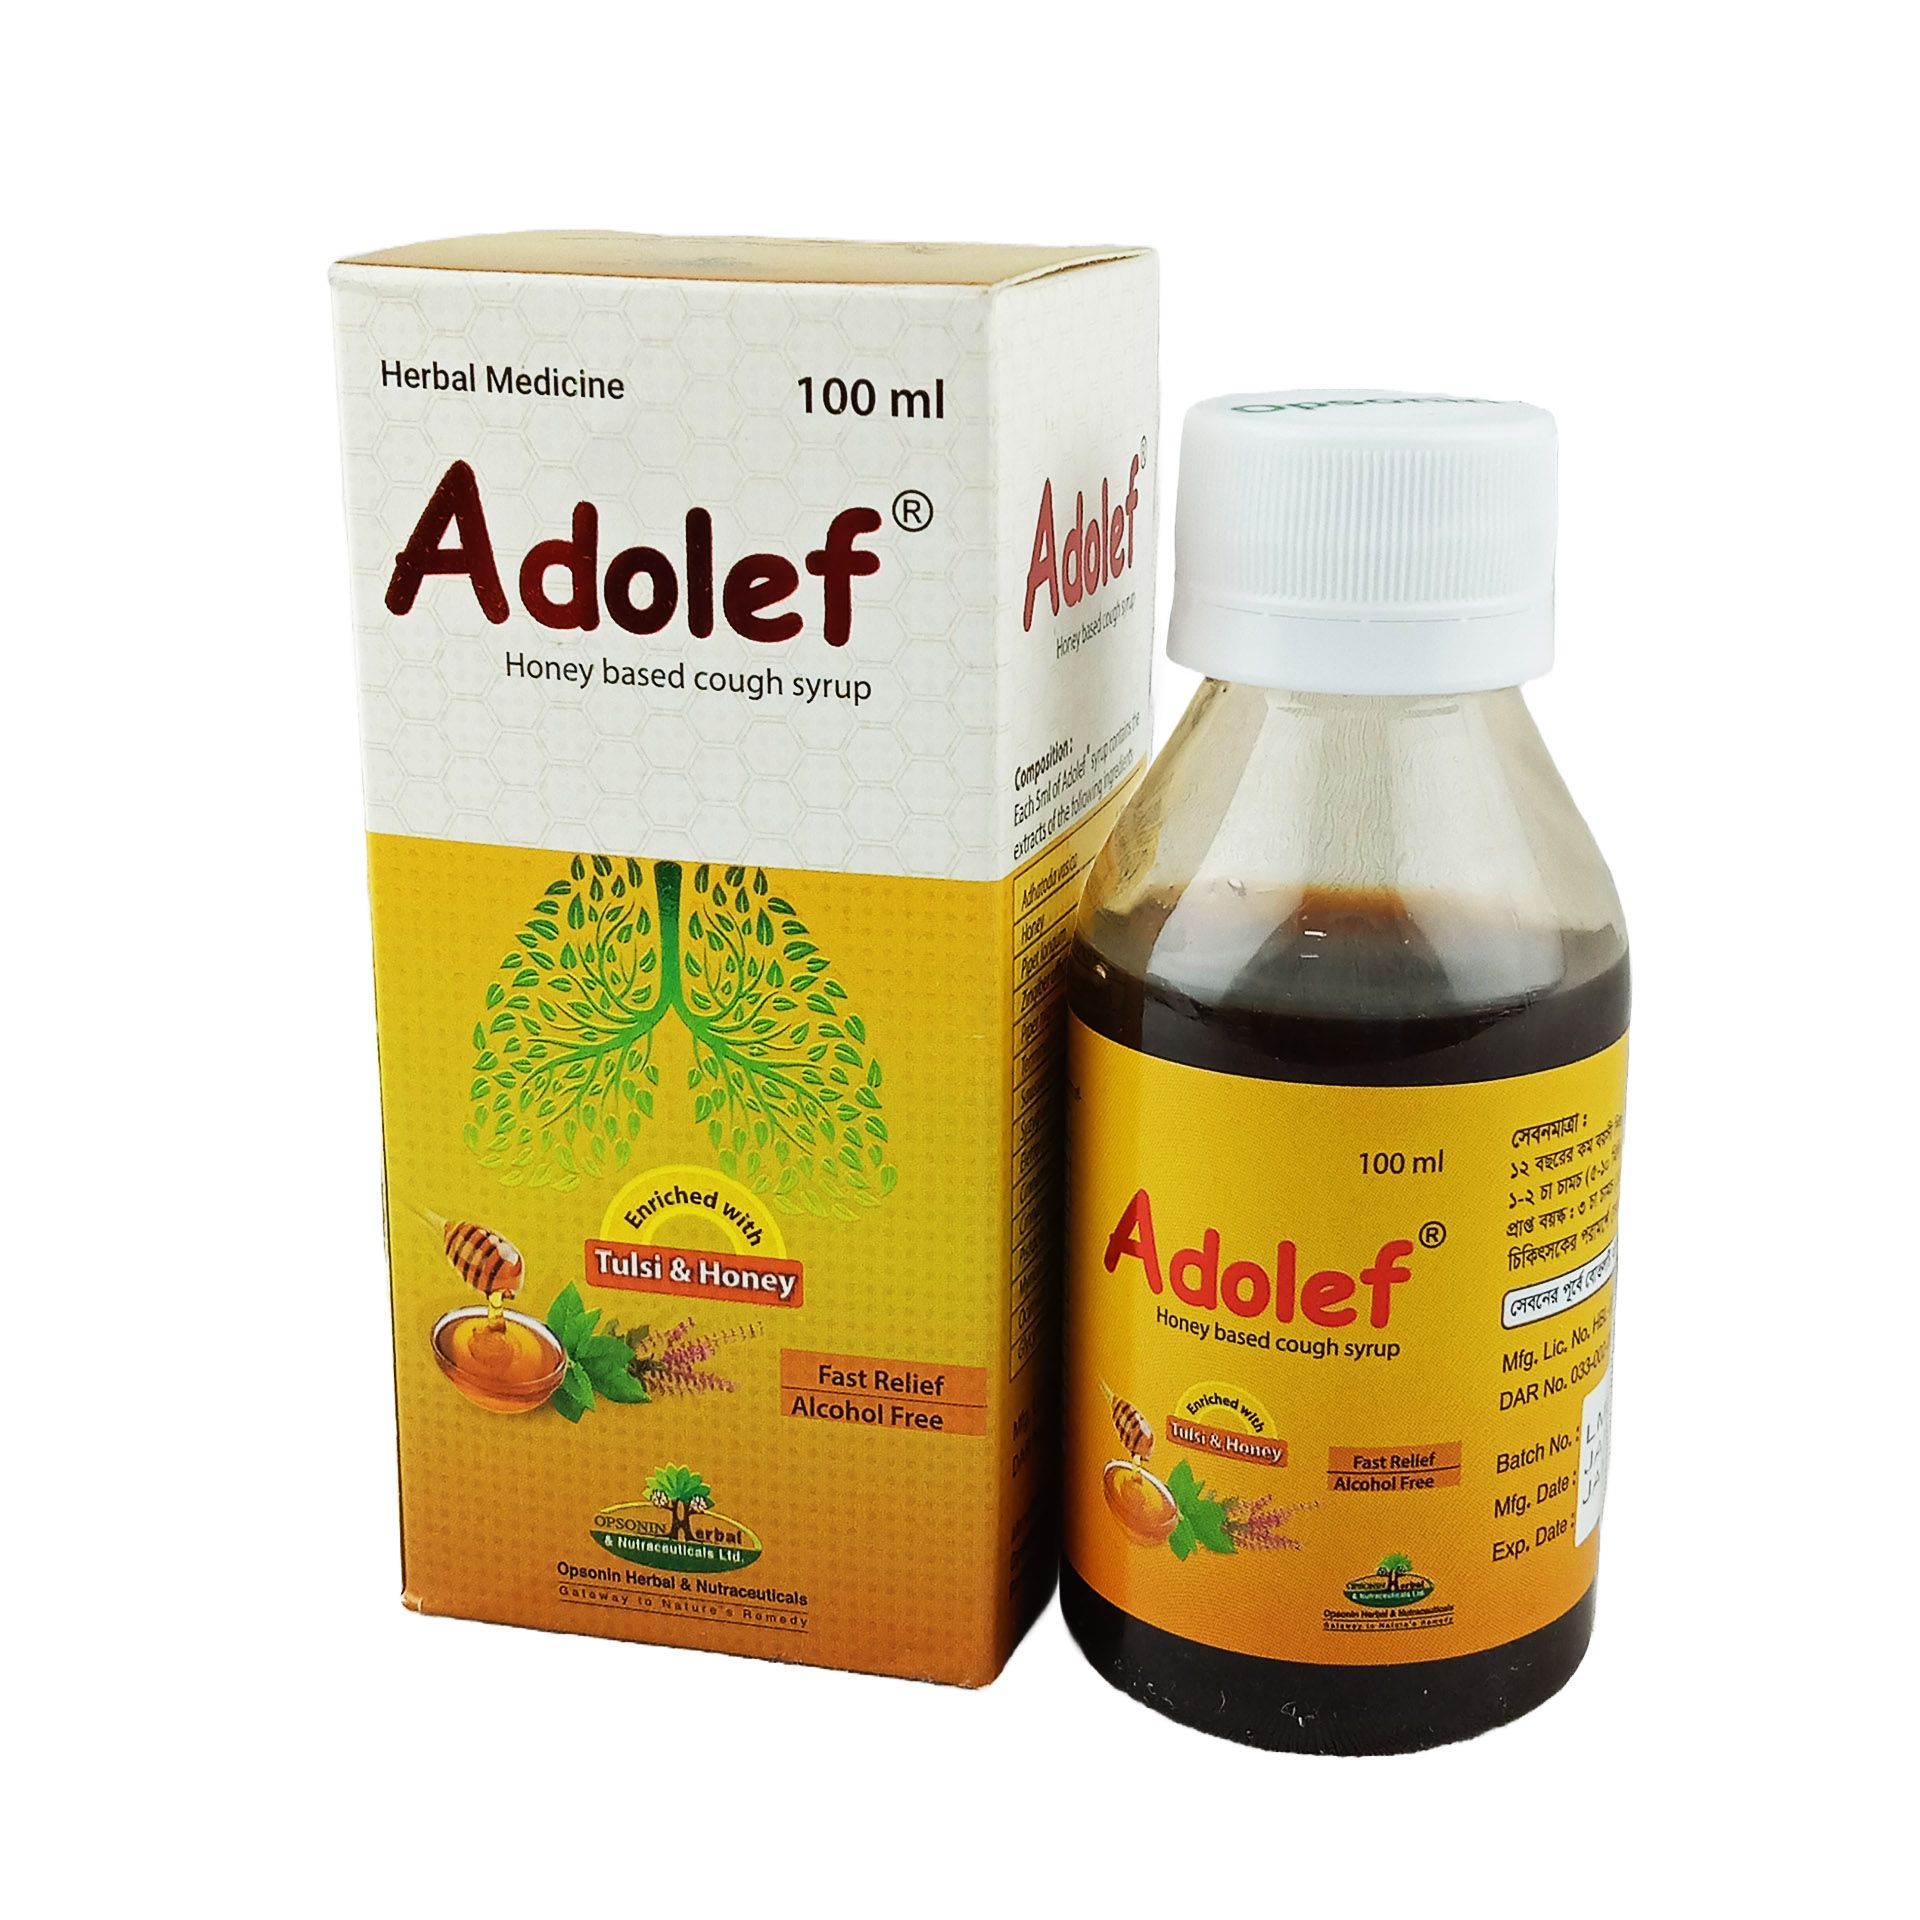 Adolef 100ml Syrup